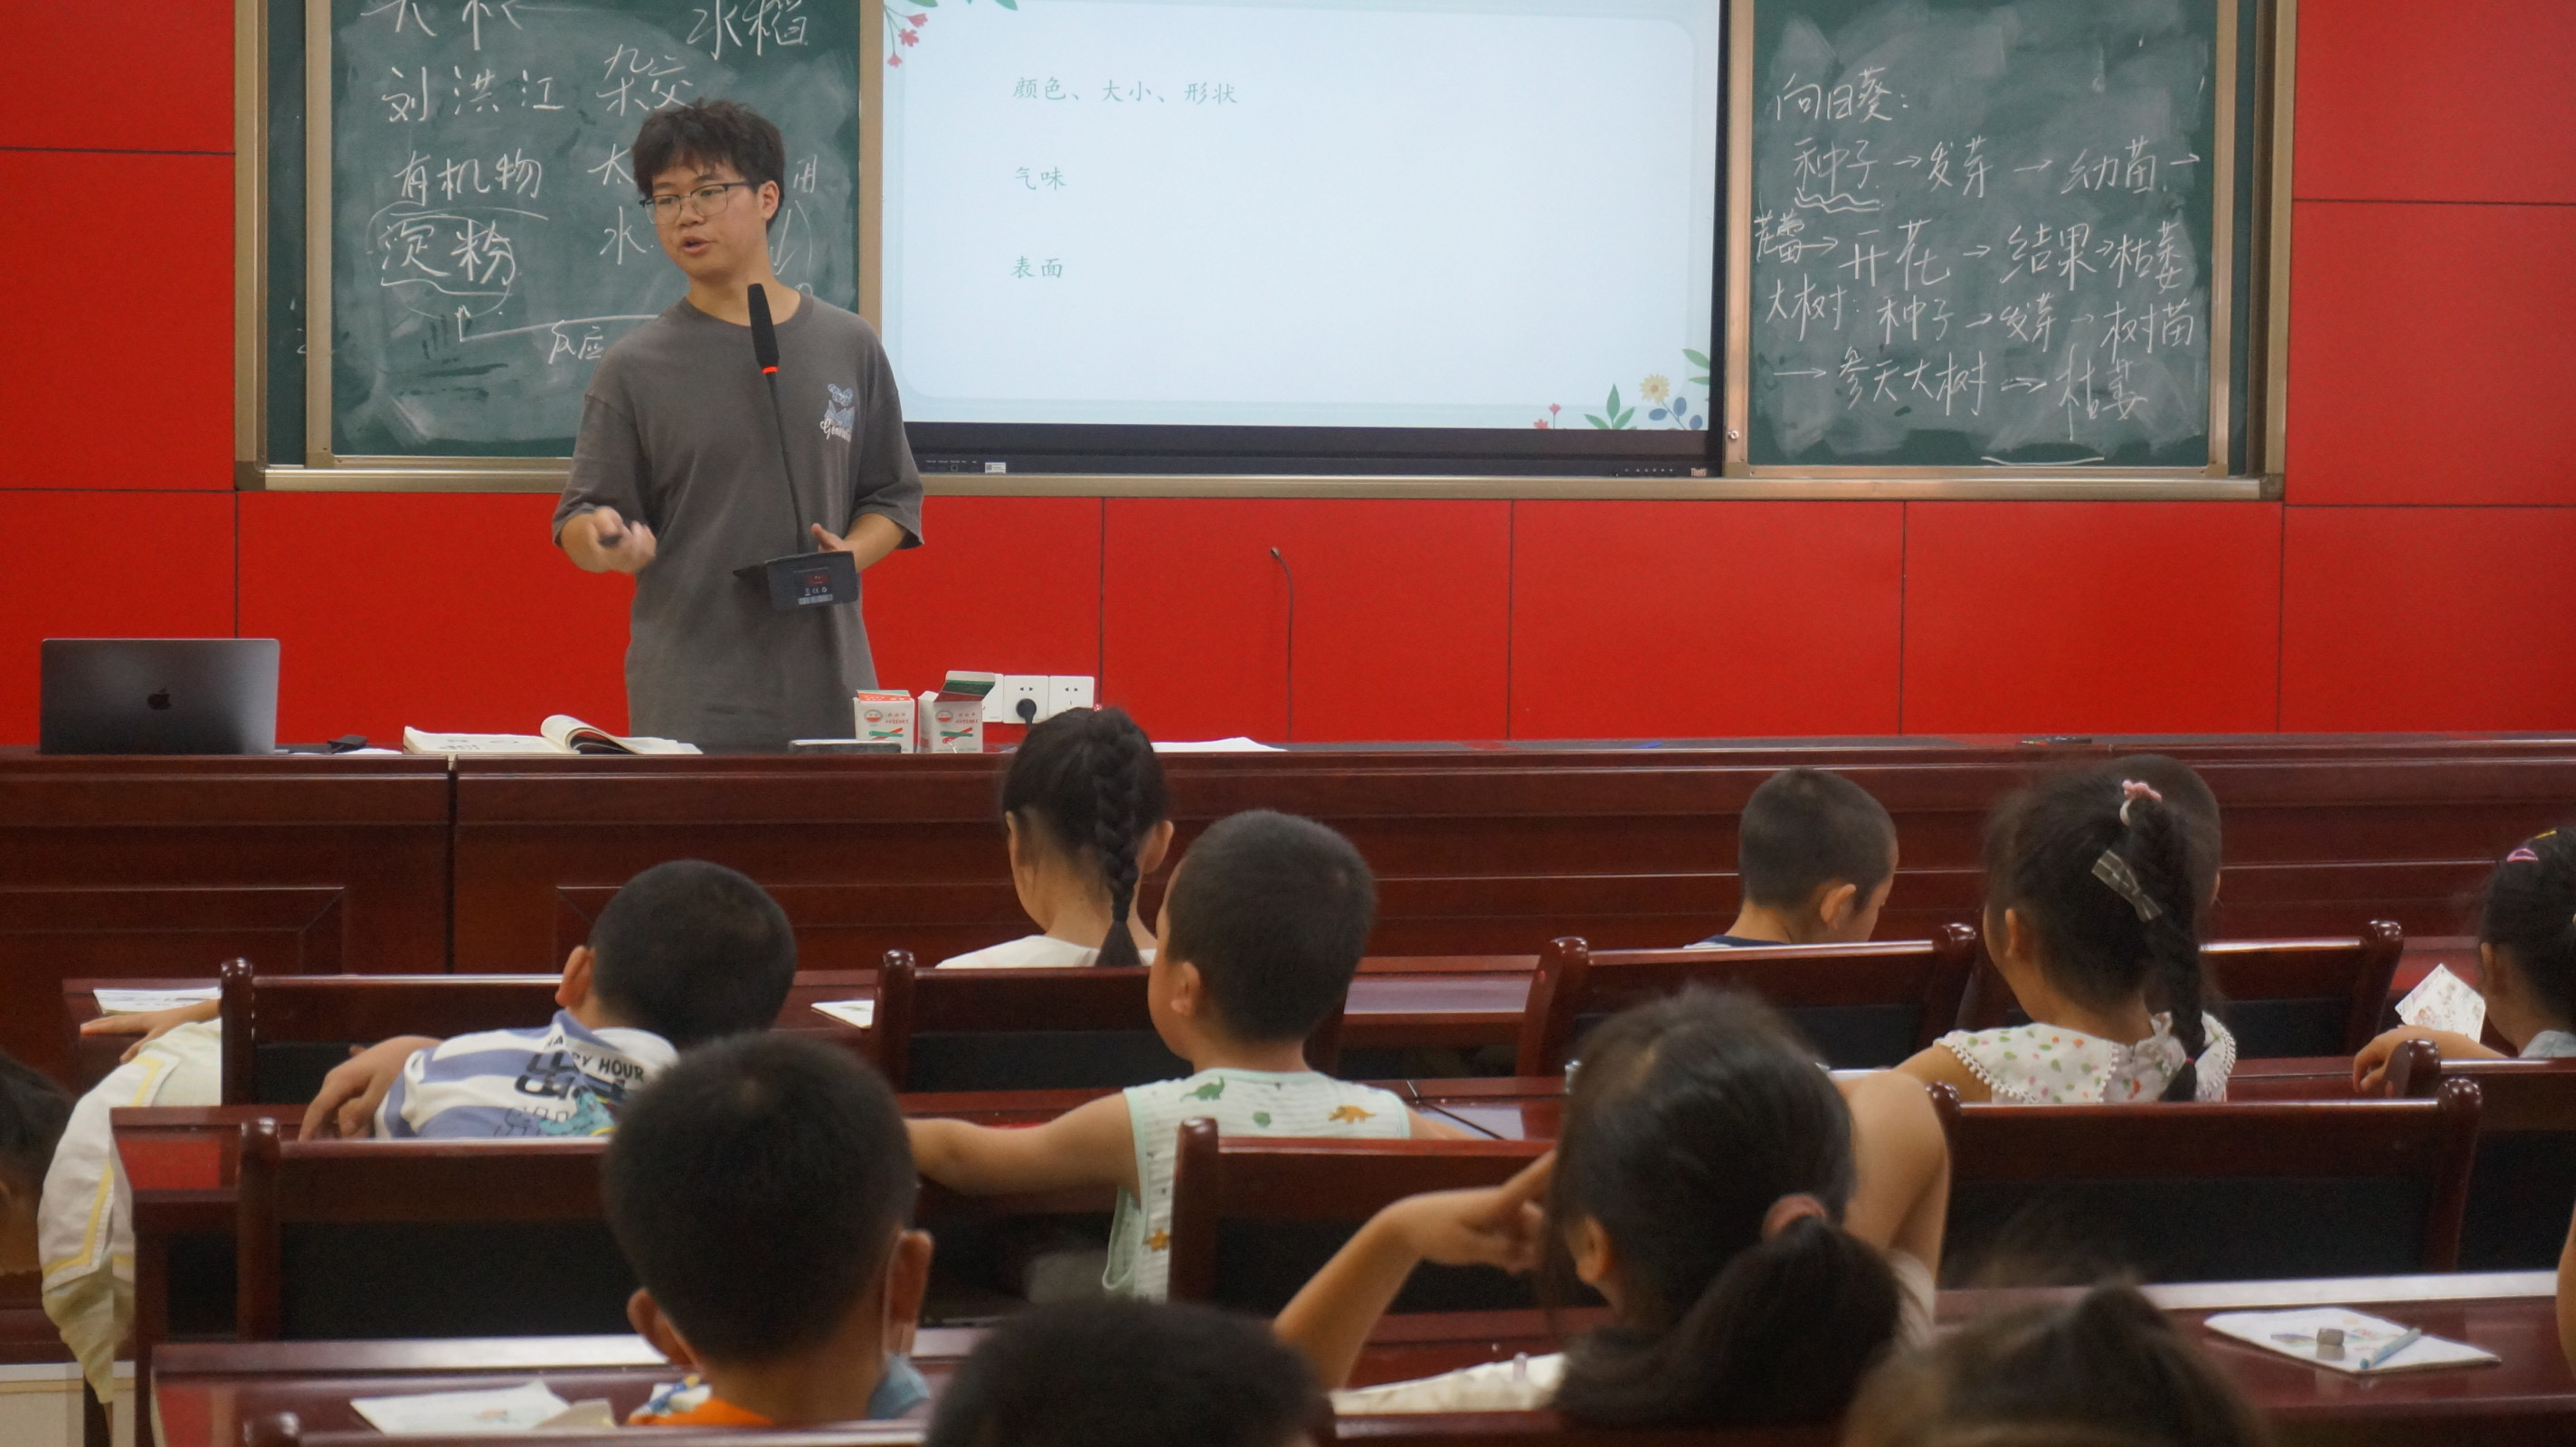 图为队员刘洪江认真为孩子们讲述种子结构 四川文化网通讯员邓其花 摄